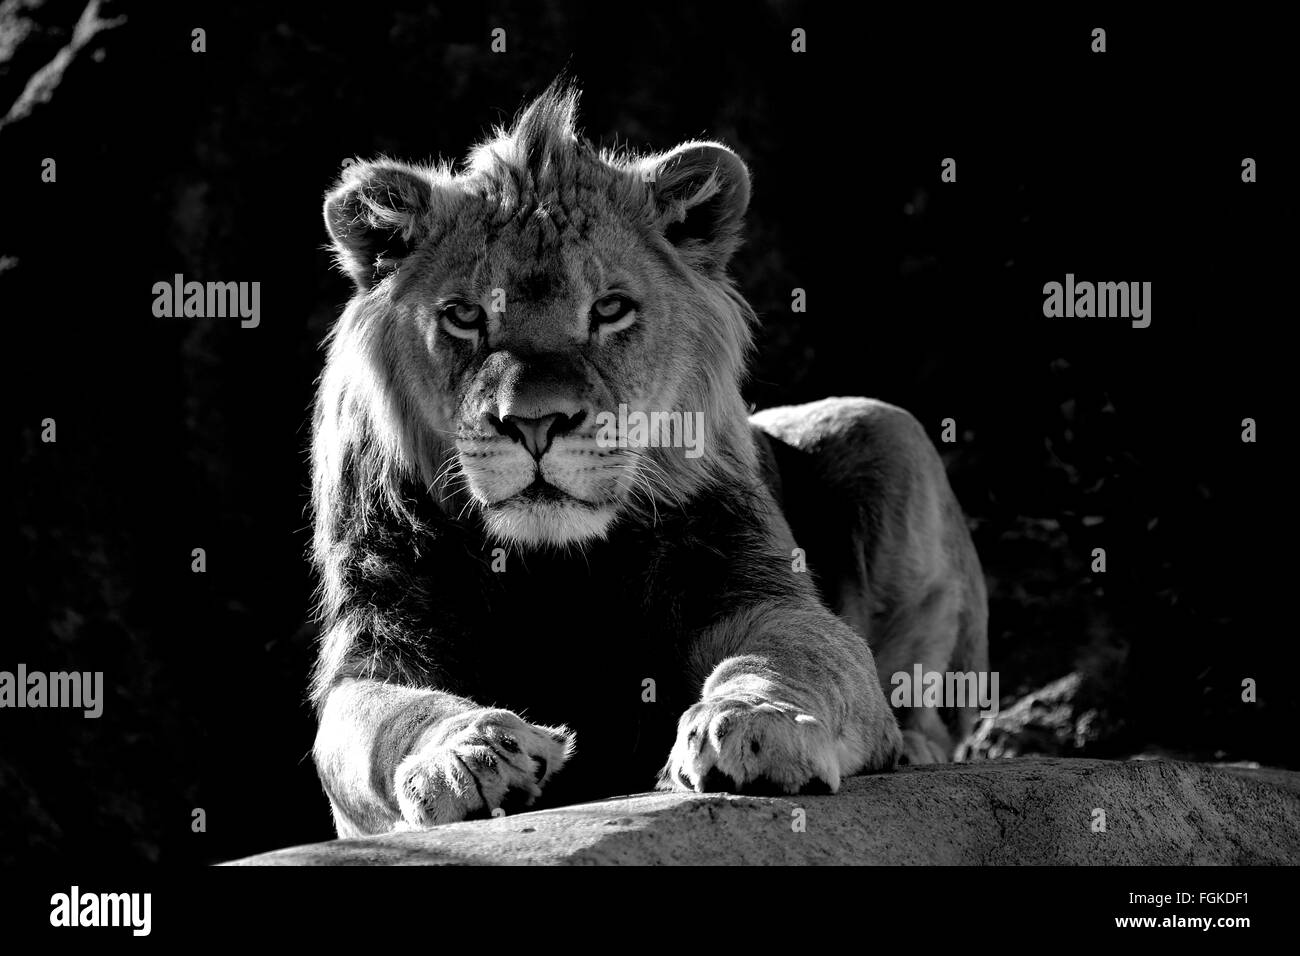 León Africano joven en blanco y negro Foto de stock